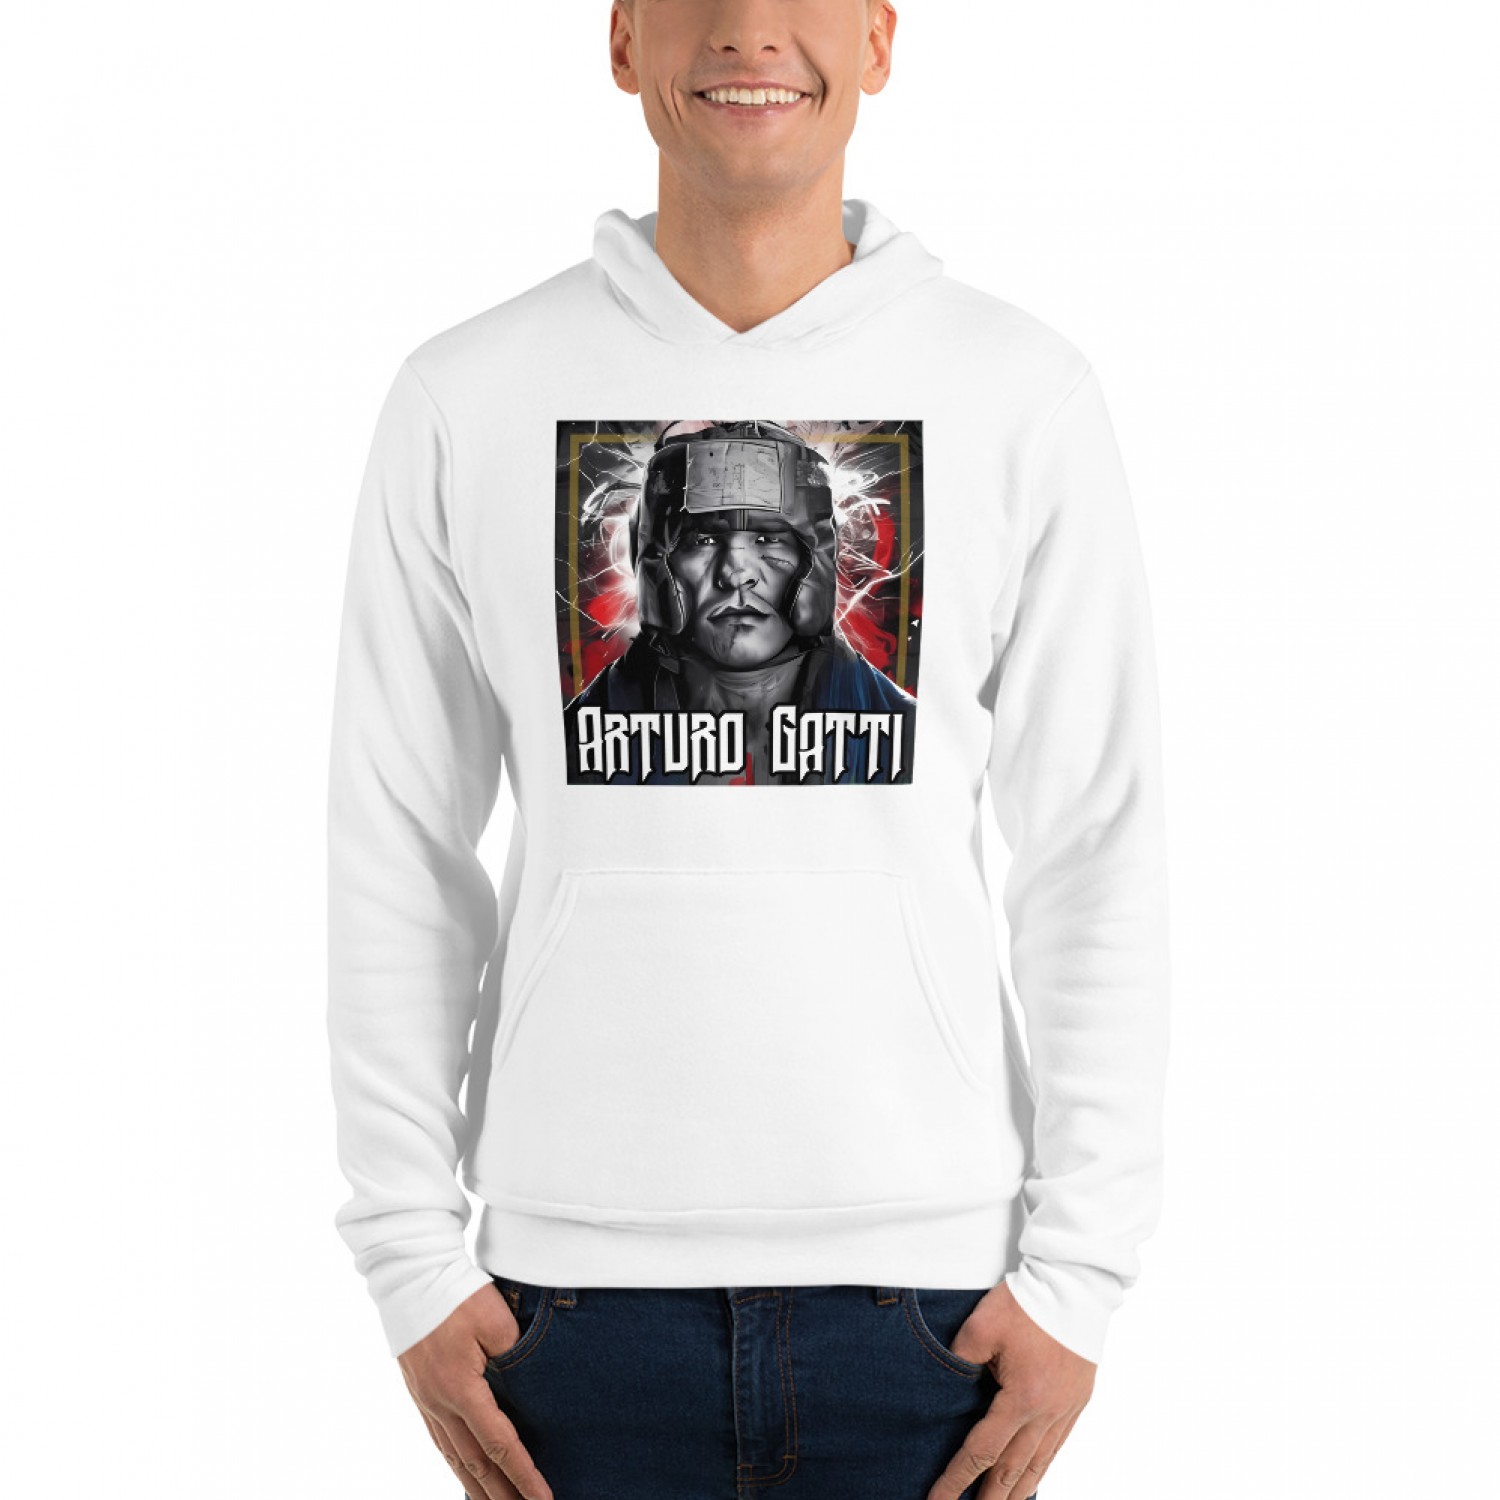 Kup bluzę sportową dla bokserów (Arturo Gatti)